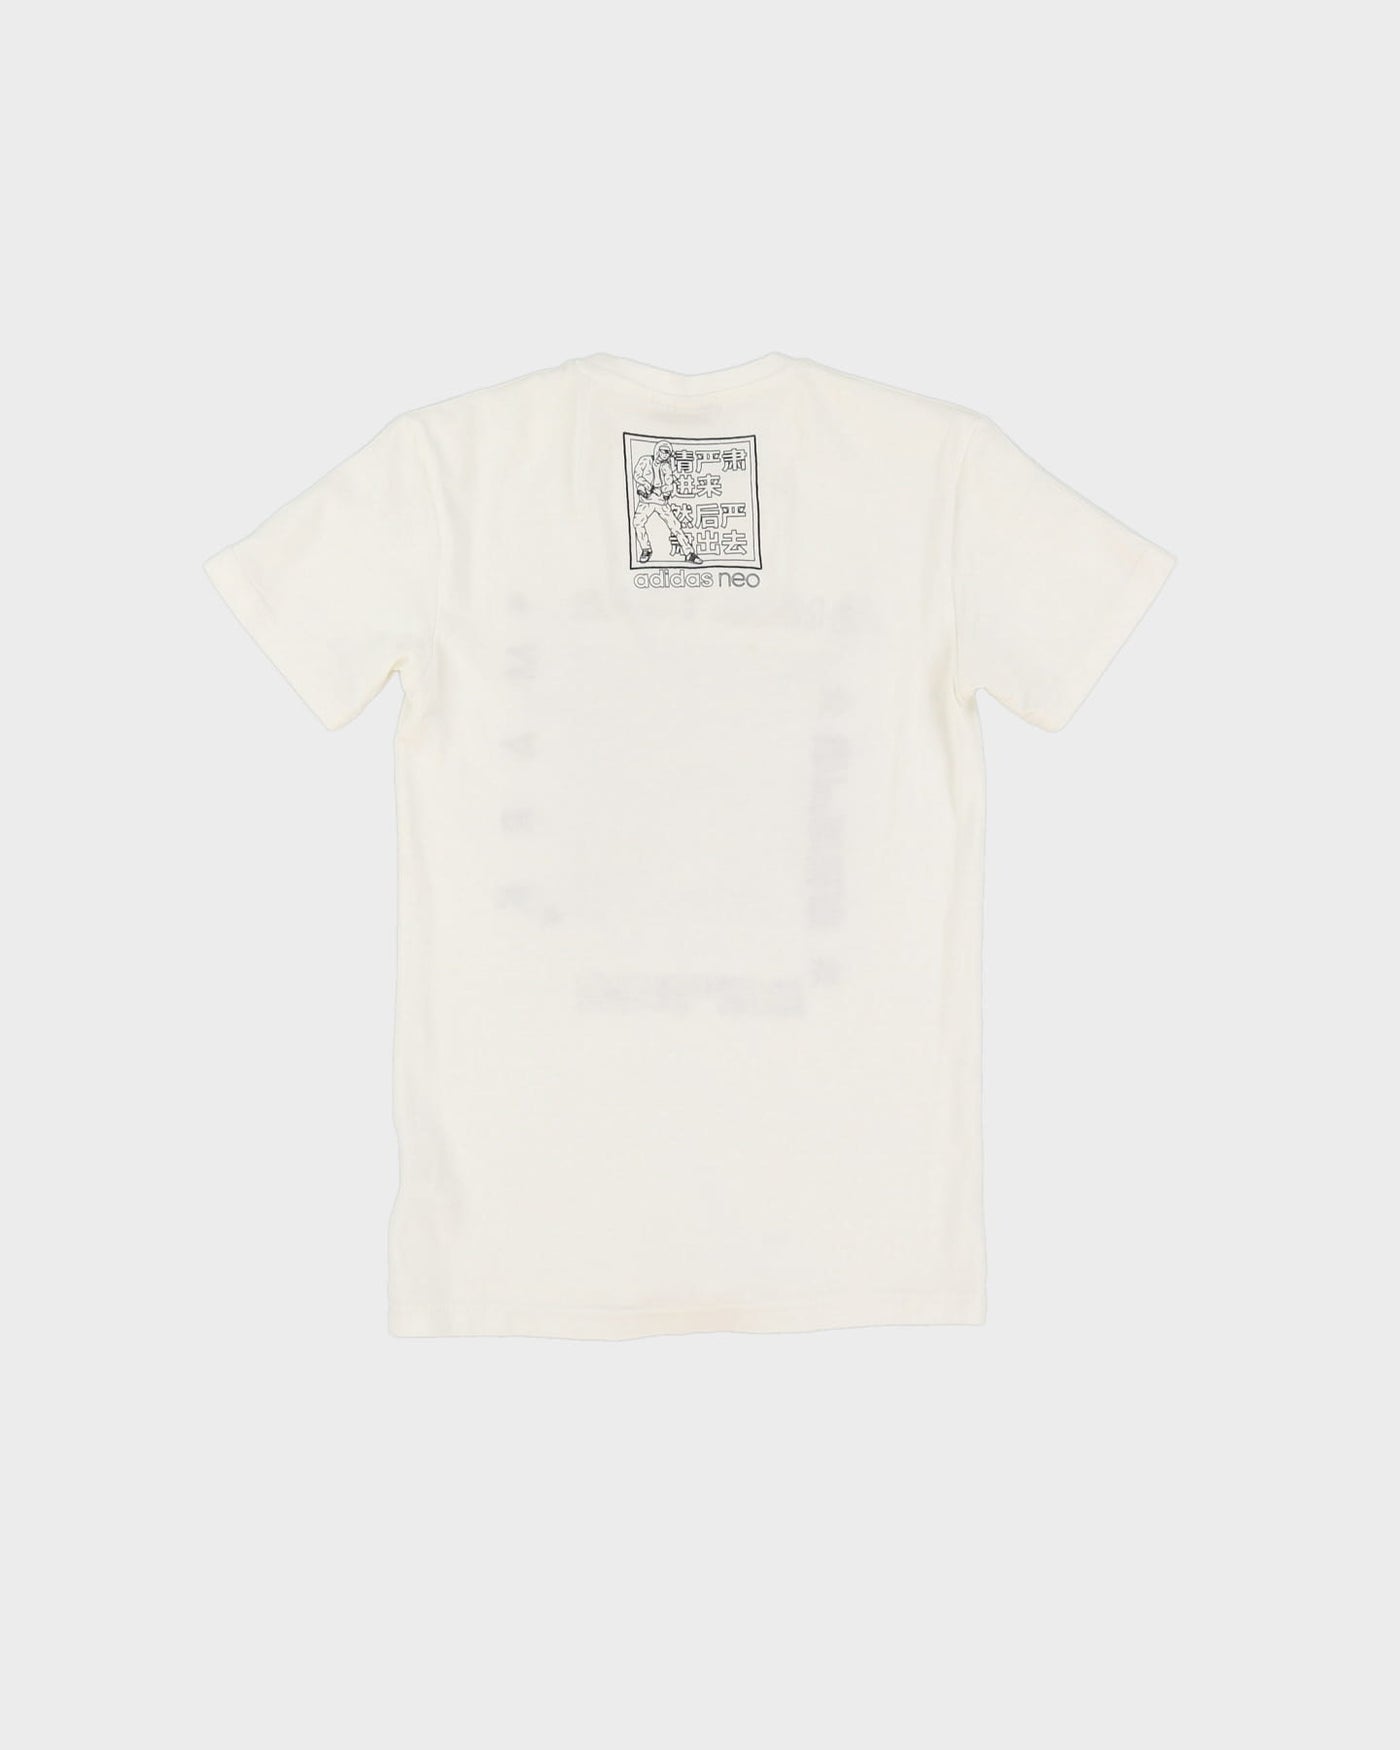 Adidas Neo White Graphic T-Shirt - XXS